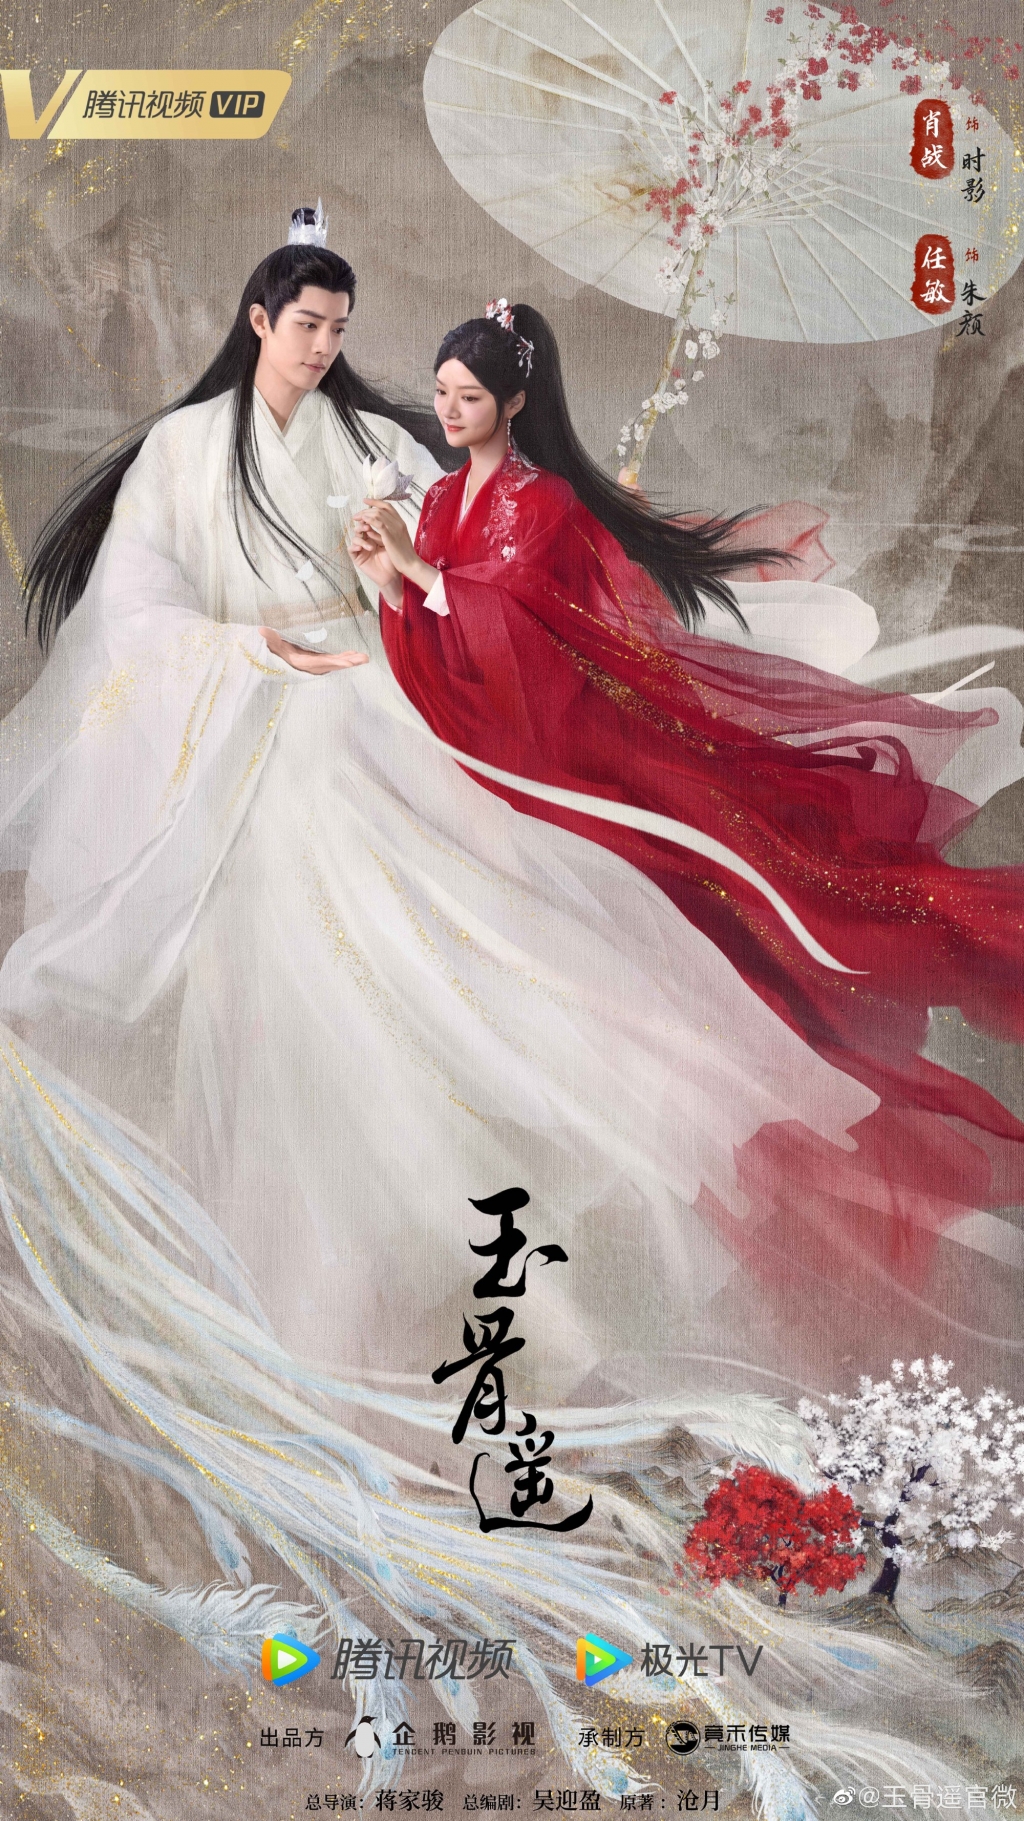 Phần 2 của 'Tinh Hán Xán Lạn' gấp rút chỉnh sửa hậu kỳ, liệu có kịp ra mắt khán giả trong tháng 9 tới?